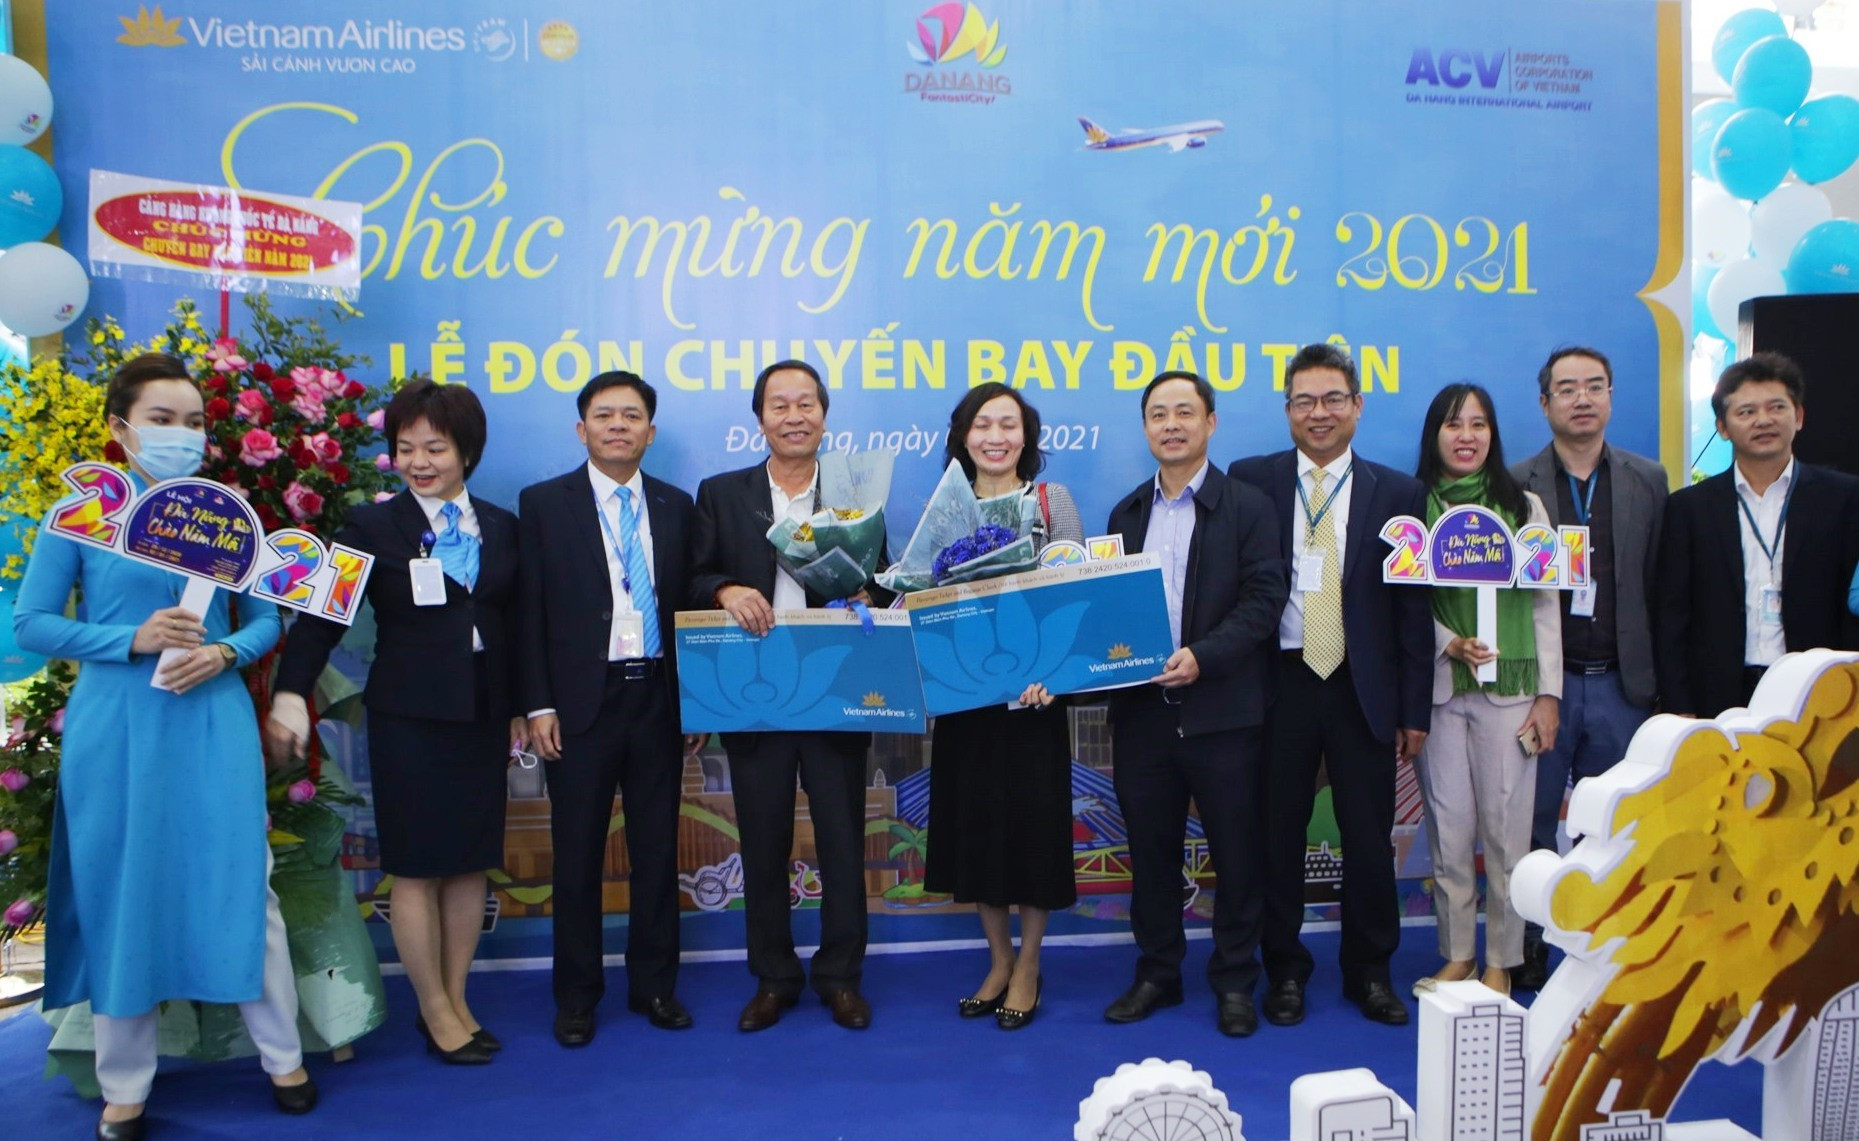 Lãnh đạo Sở Du lịch Đà Nẵng và Cảng Hàng không quốc tế Đà Nẵng cùng Vietnam Airlines tổ chức đón chuyến bay đầu tiên trong dịp Tết dương lịch 2021. Ảnh: XUÂN LAN